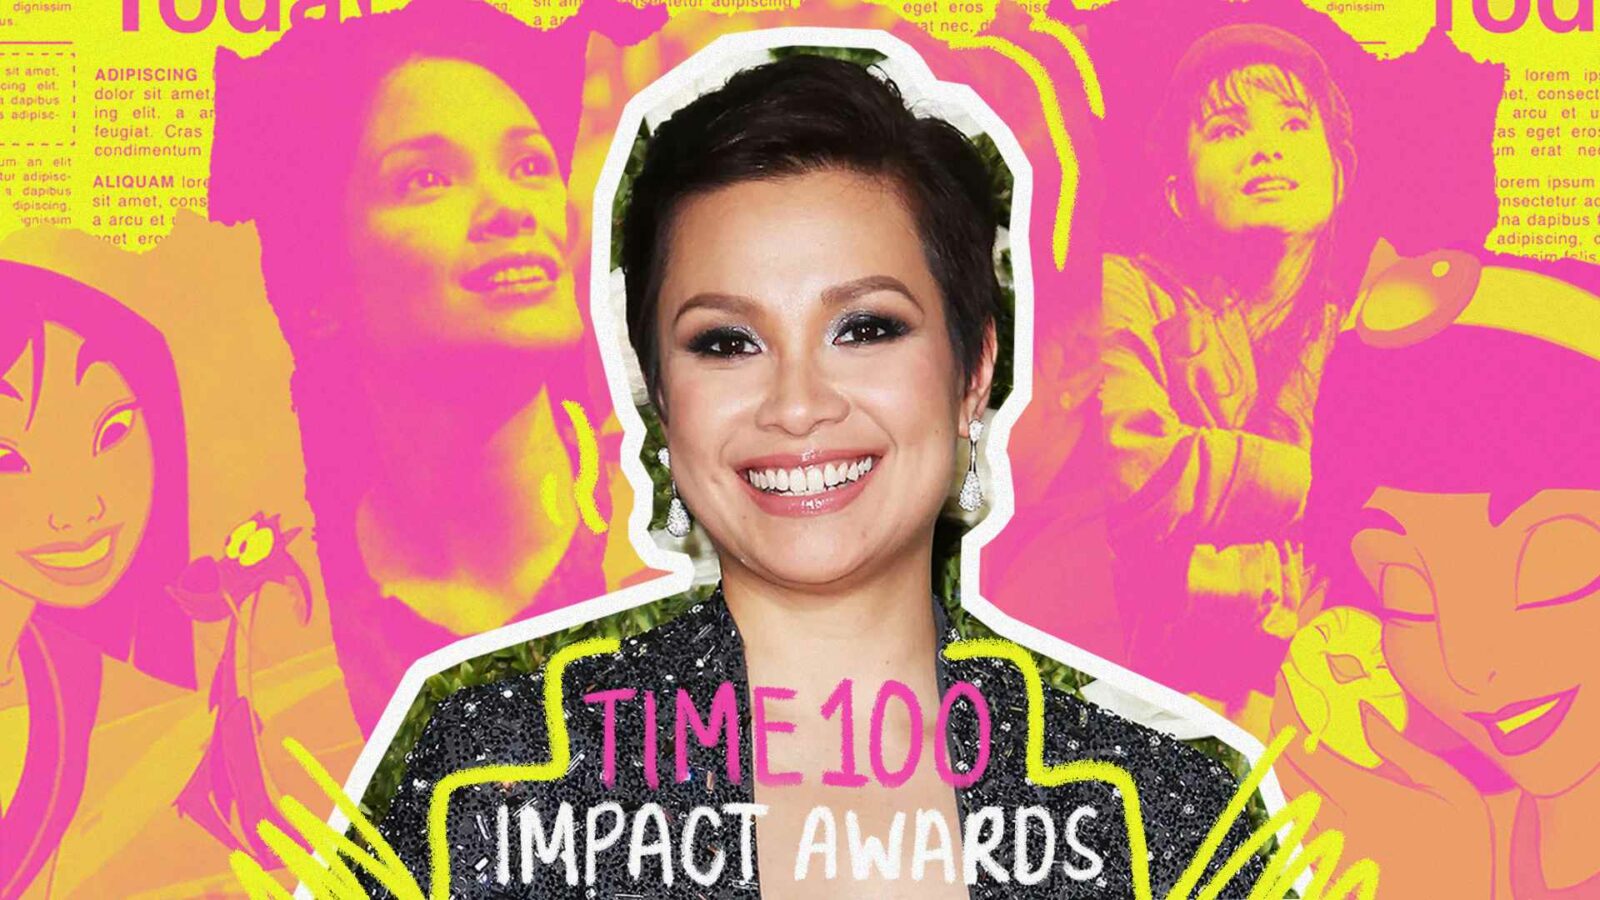 Lea Salonga Time100 Impact Award